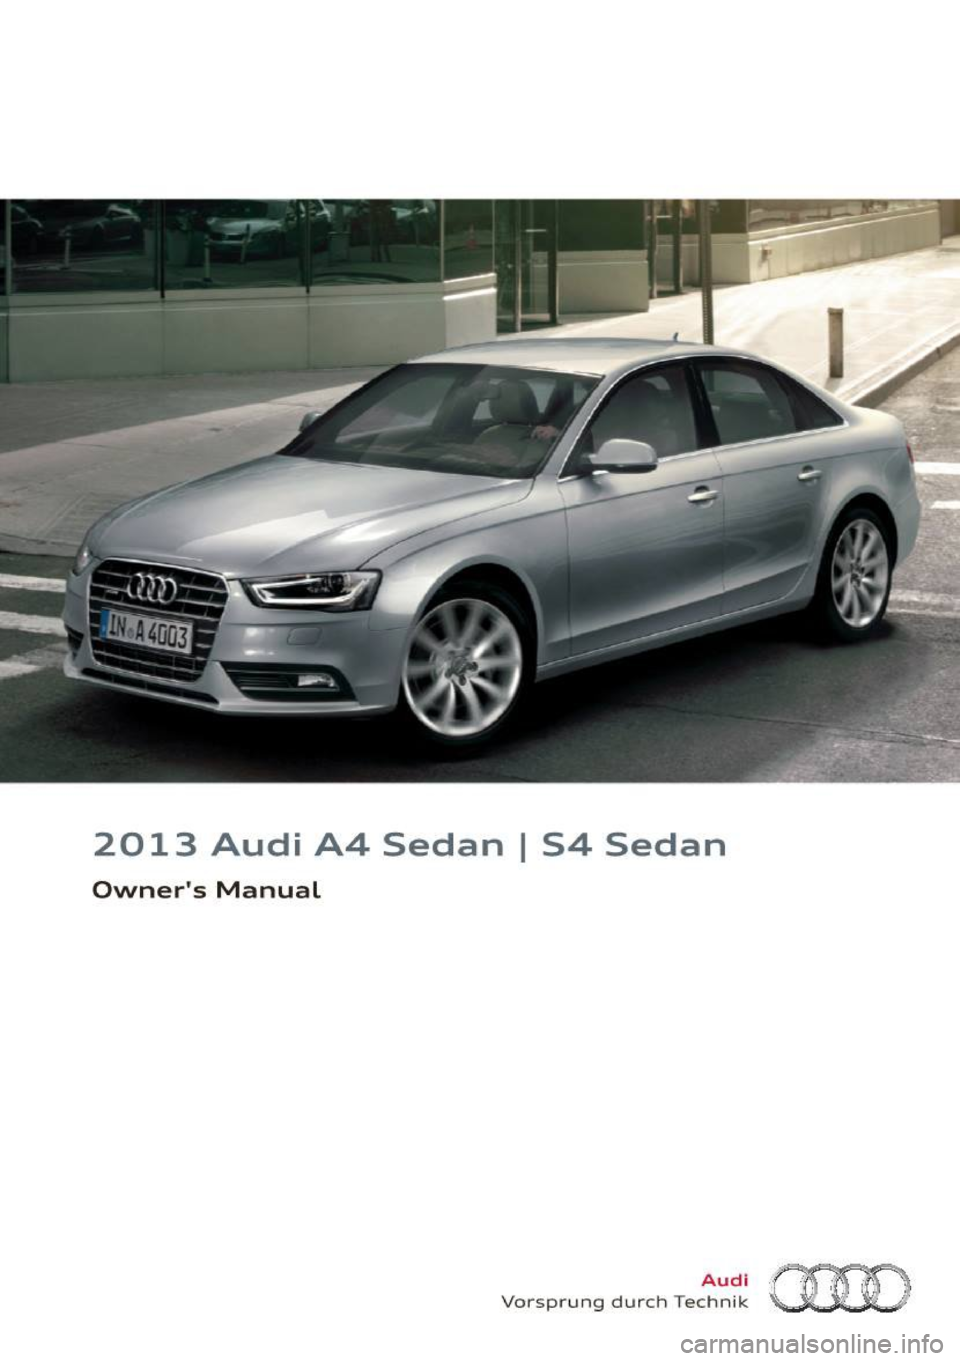 AUDI S4 SEDAN 2013  Owners Manual 2013  Audi  A4  Sedan I 54  Sedan 
Owners  Manual 
Audi 
Vo rspr ung  du rch  Techn ik (HO  